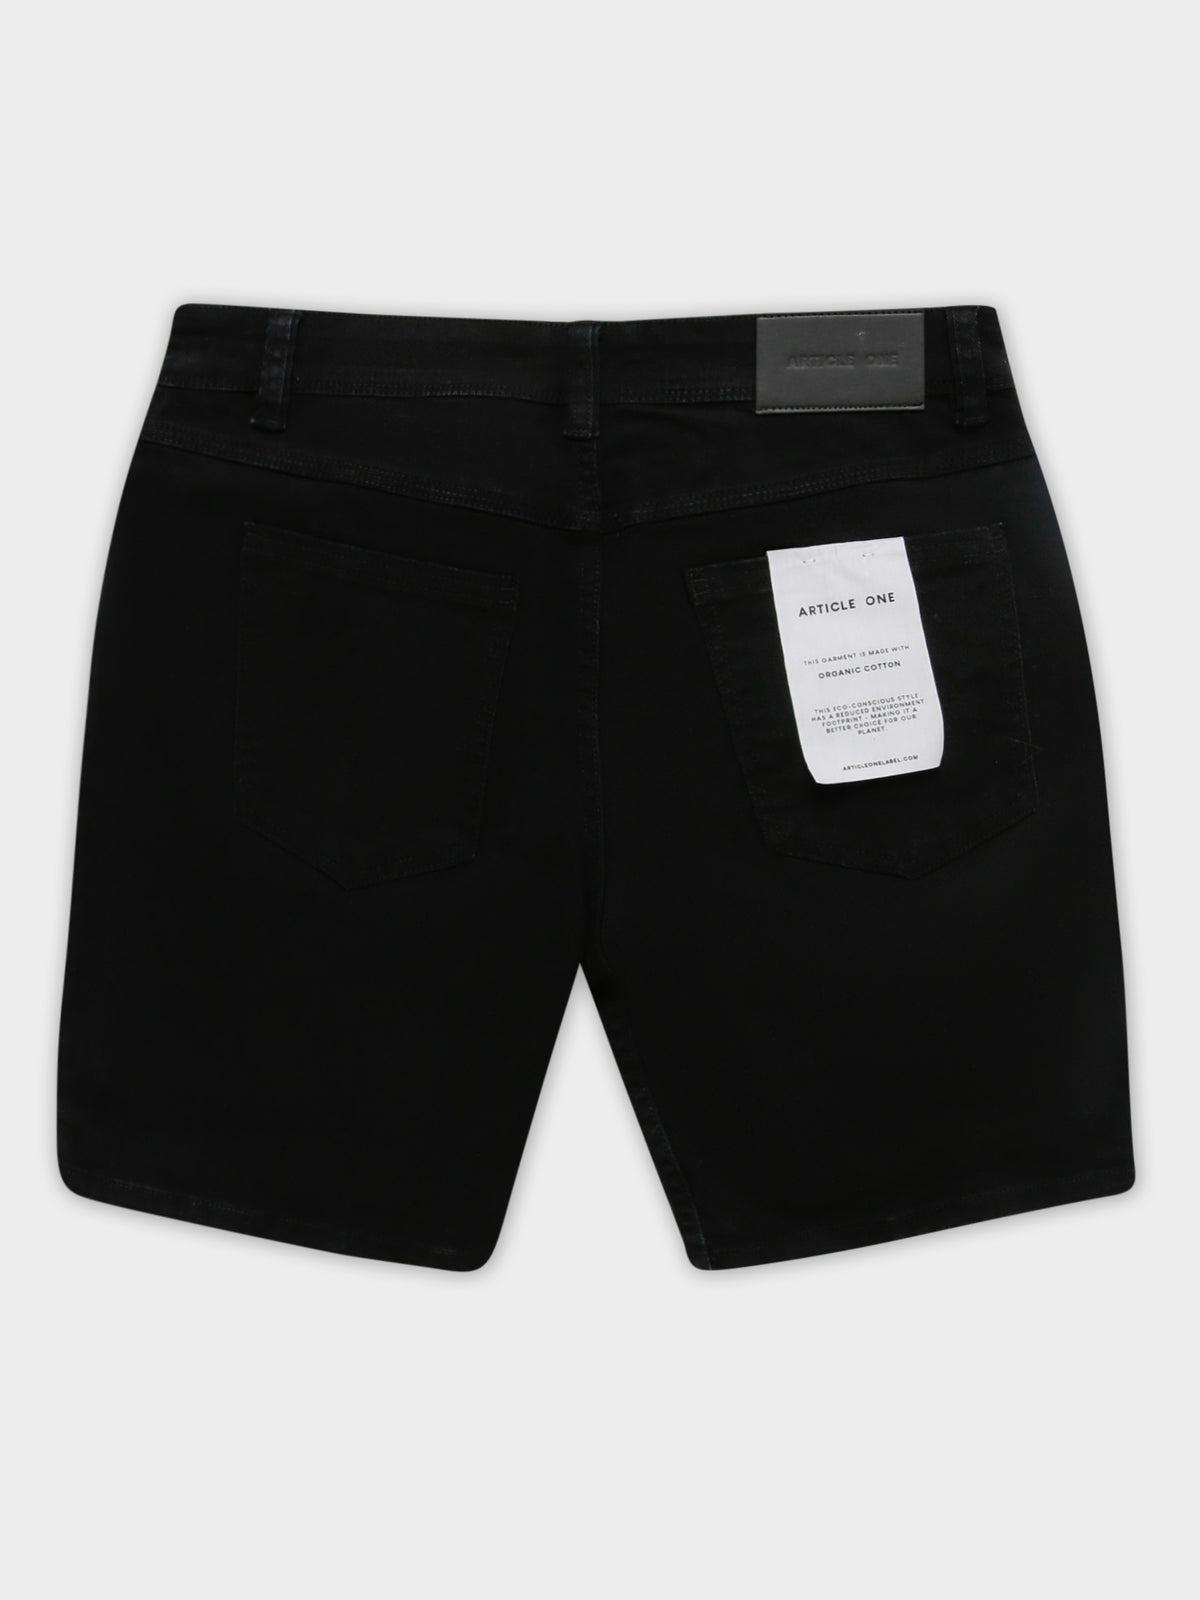 Niko Slim Denim Shorts in True Black